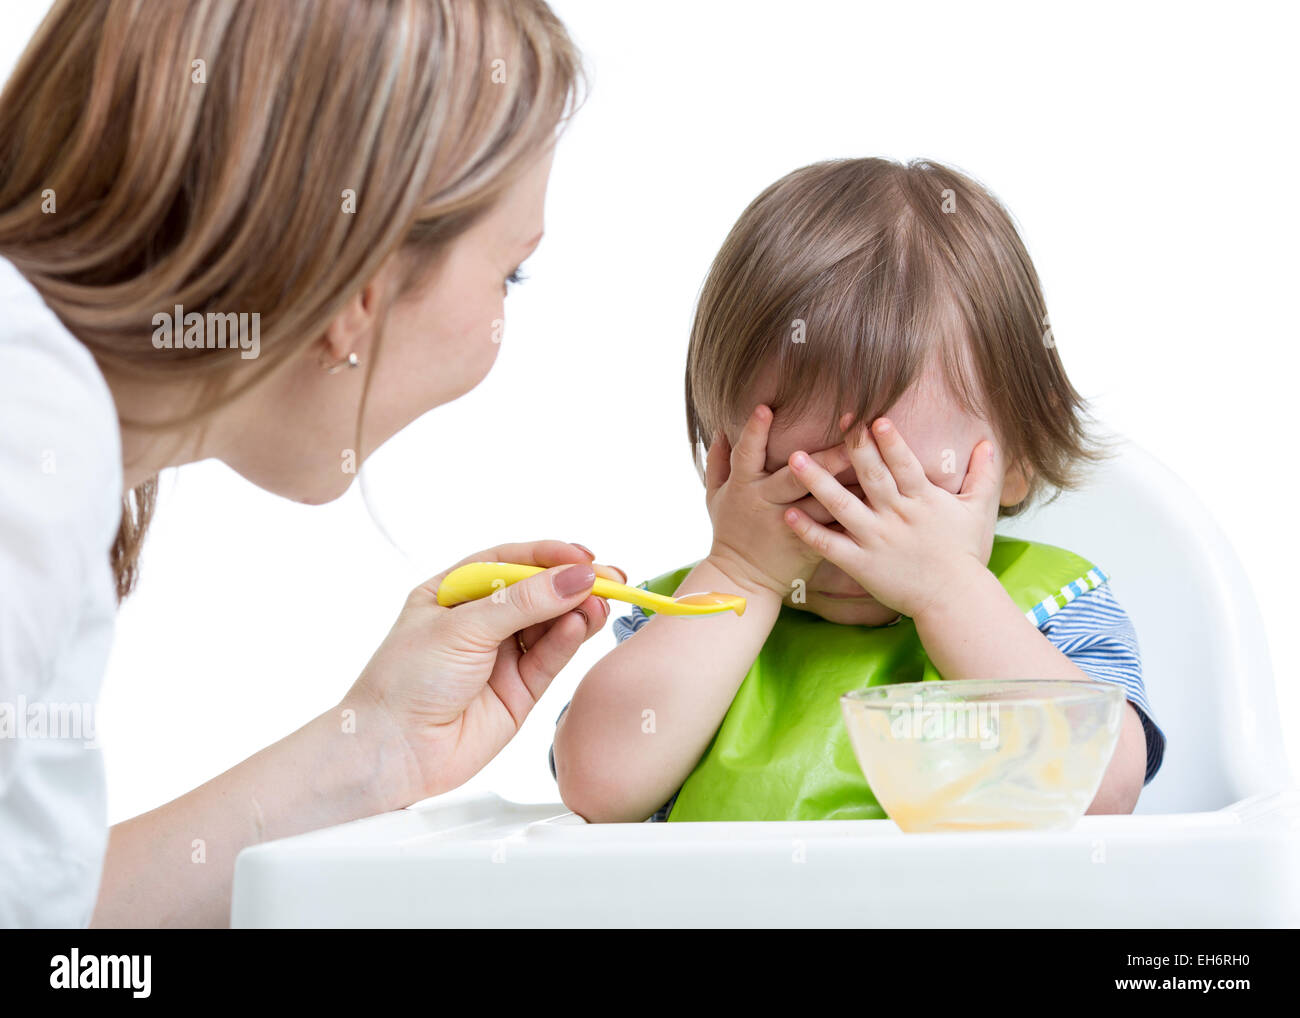 Niño se niega a comer con las manos cara de cierre Foto de stock